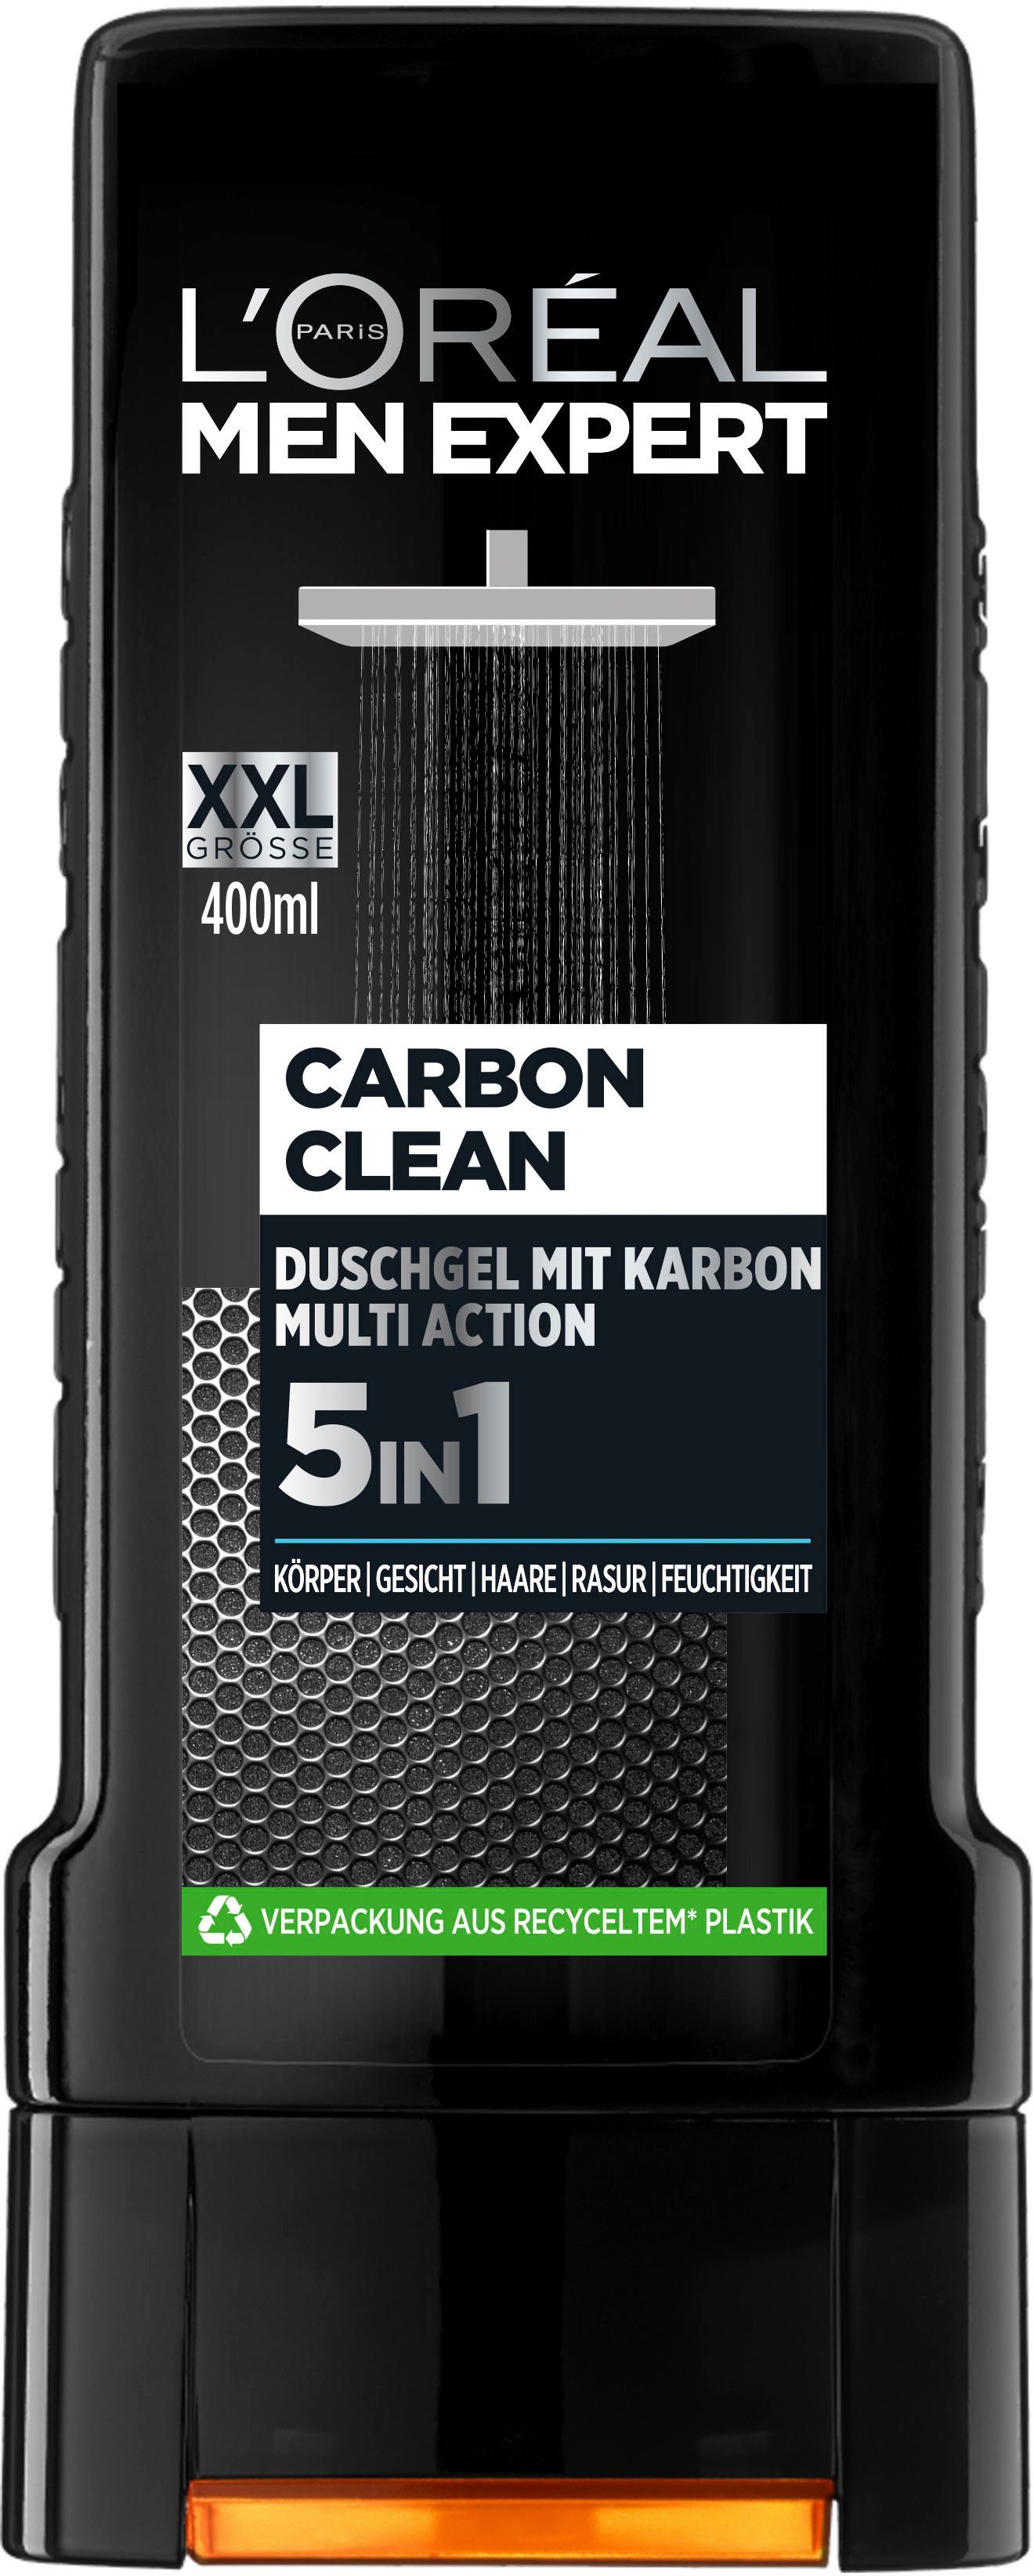 L'ORÉAL PARIS Duschgel 5in1 Carbon MEN Clean XXL EXPERT